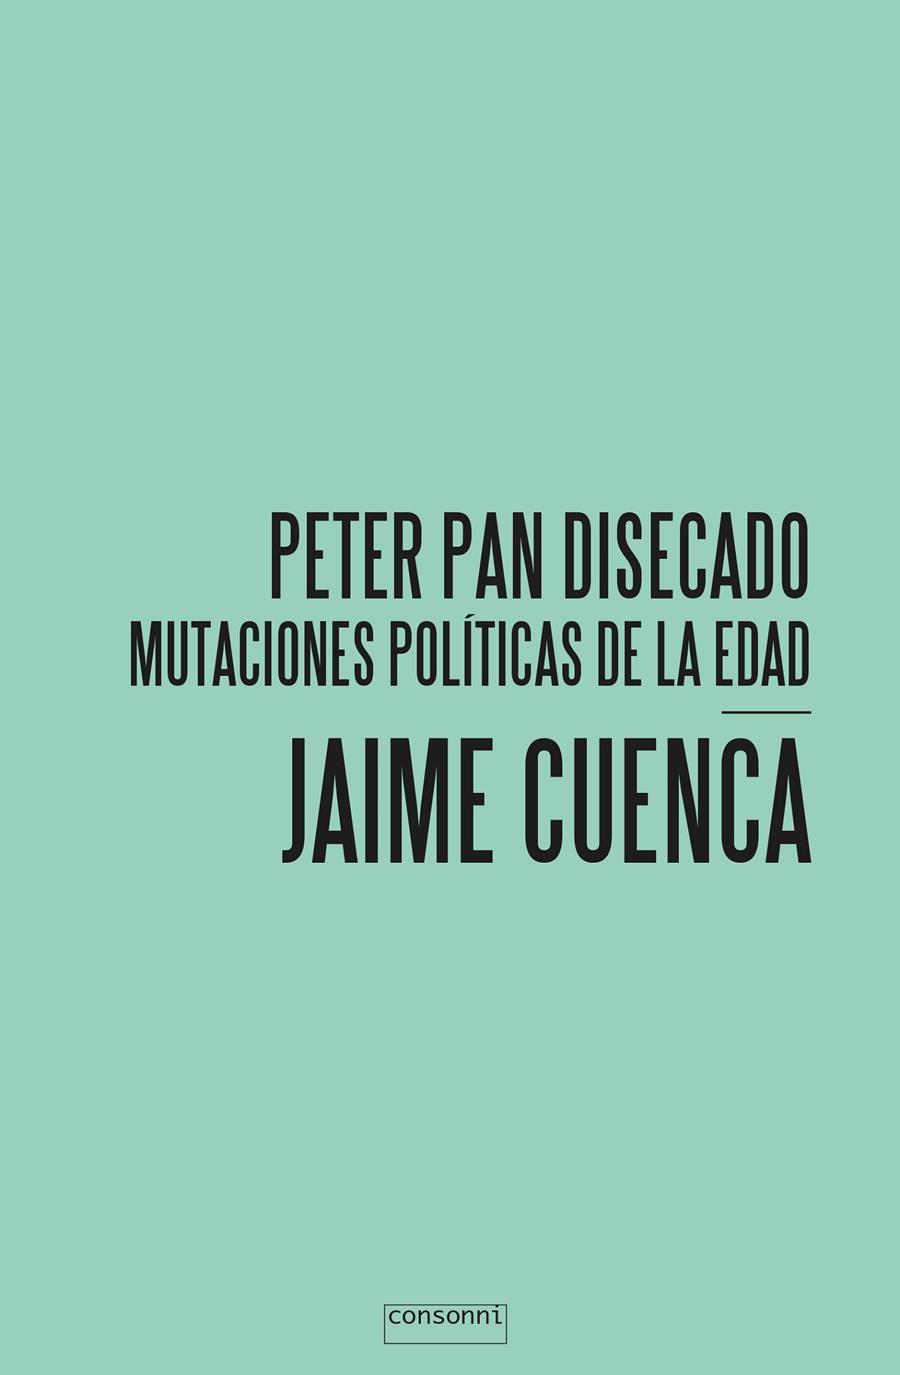 Peter Pan Disecado mutaciones políticas de la edad | Jaime Cuenca | Cooperativa autogestionària